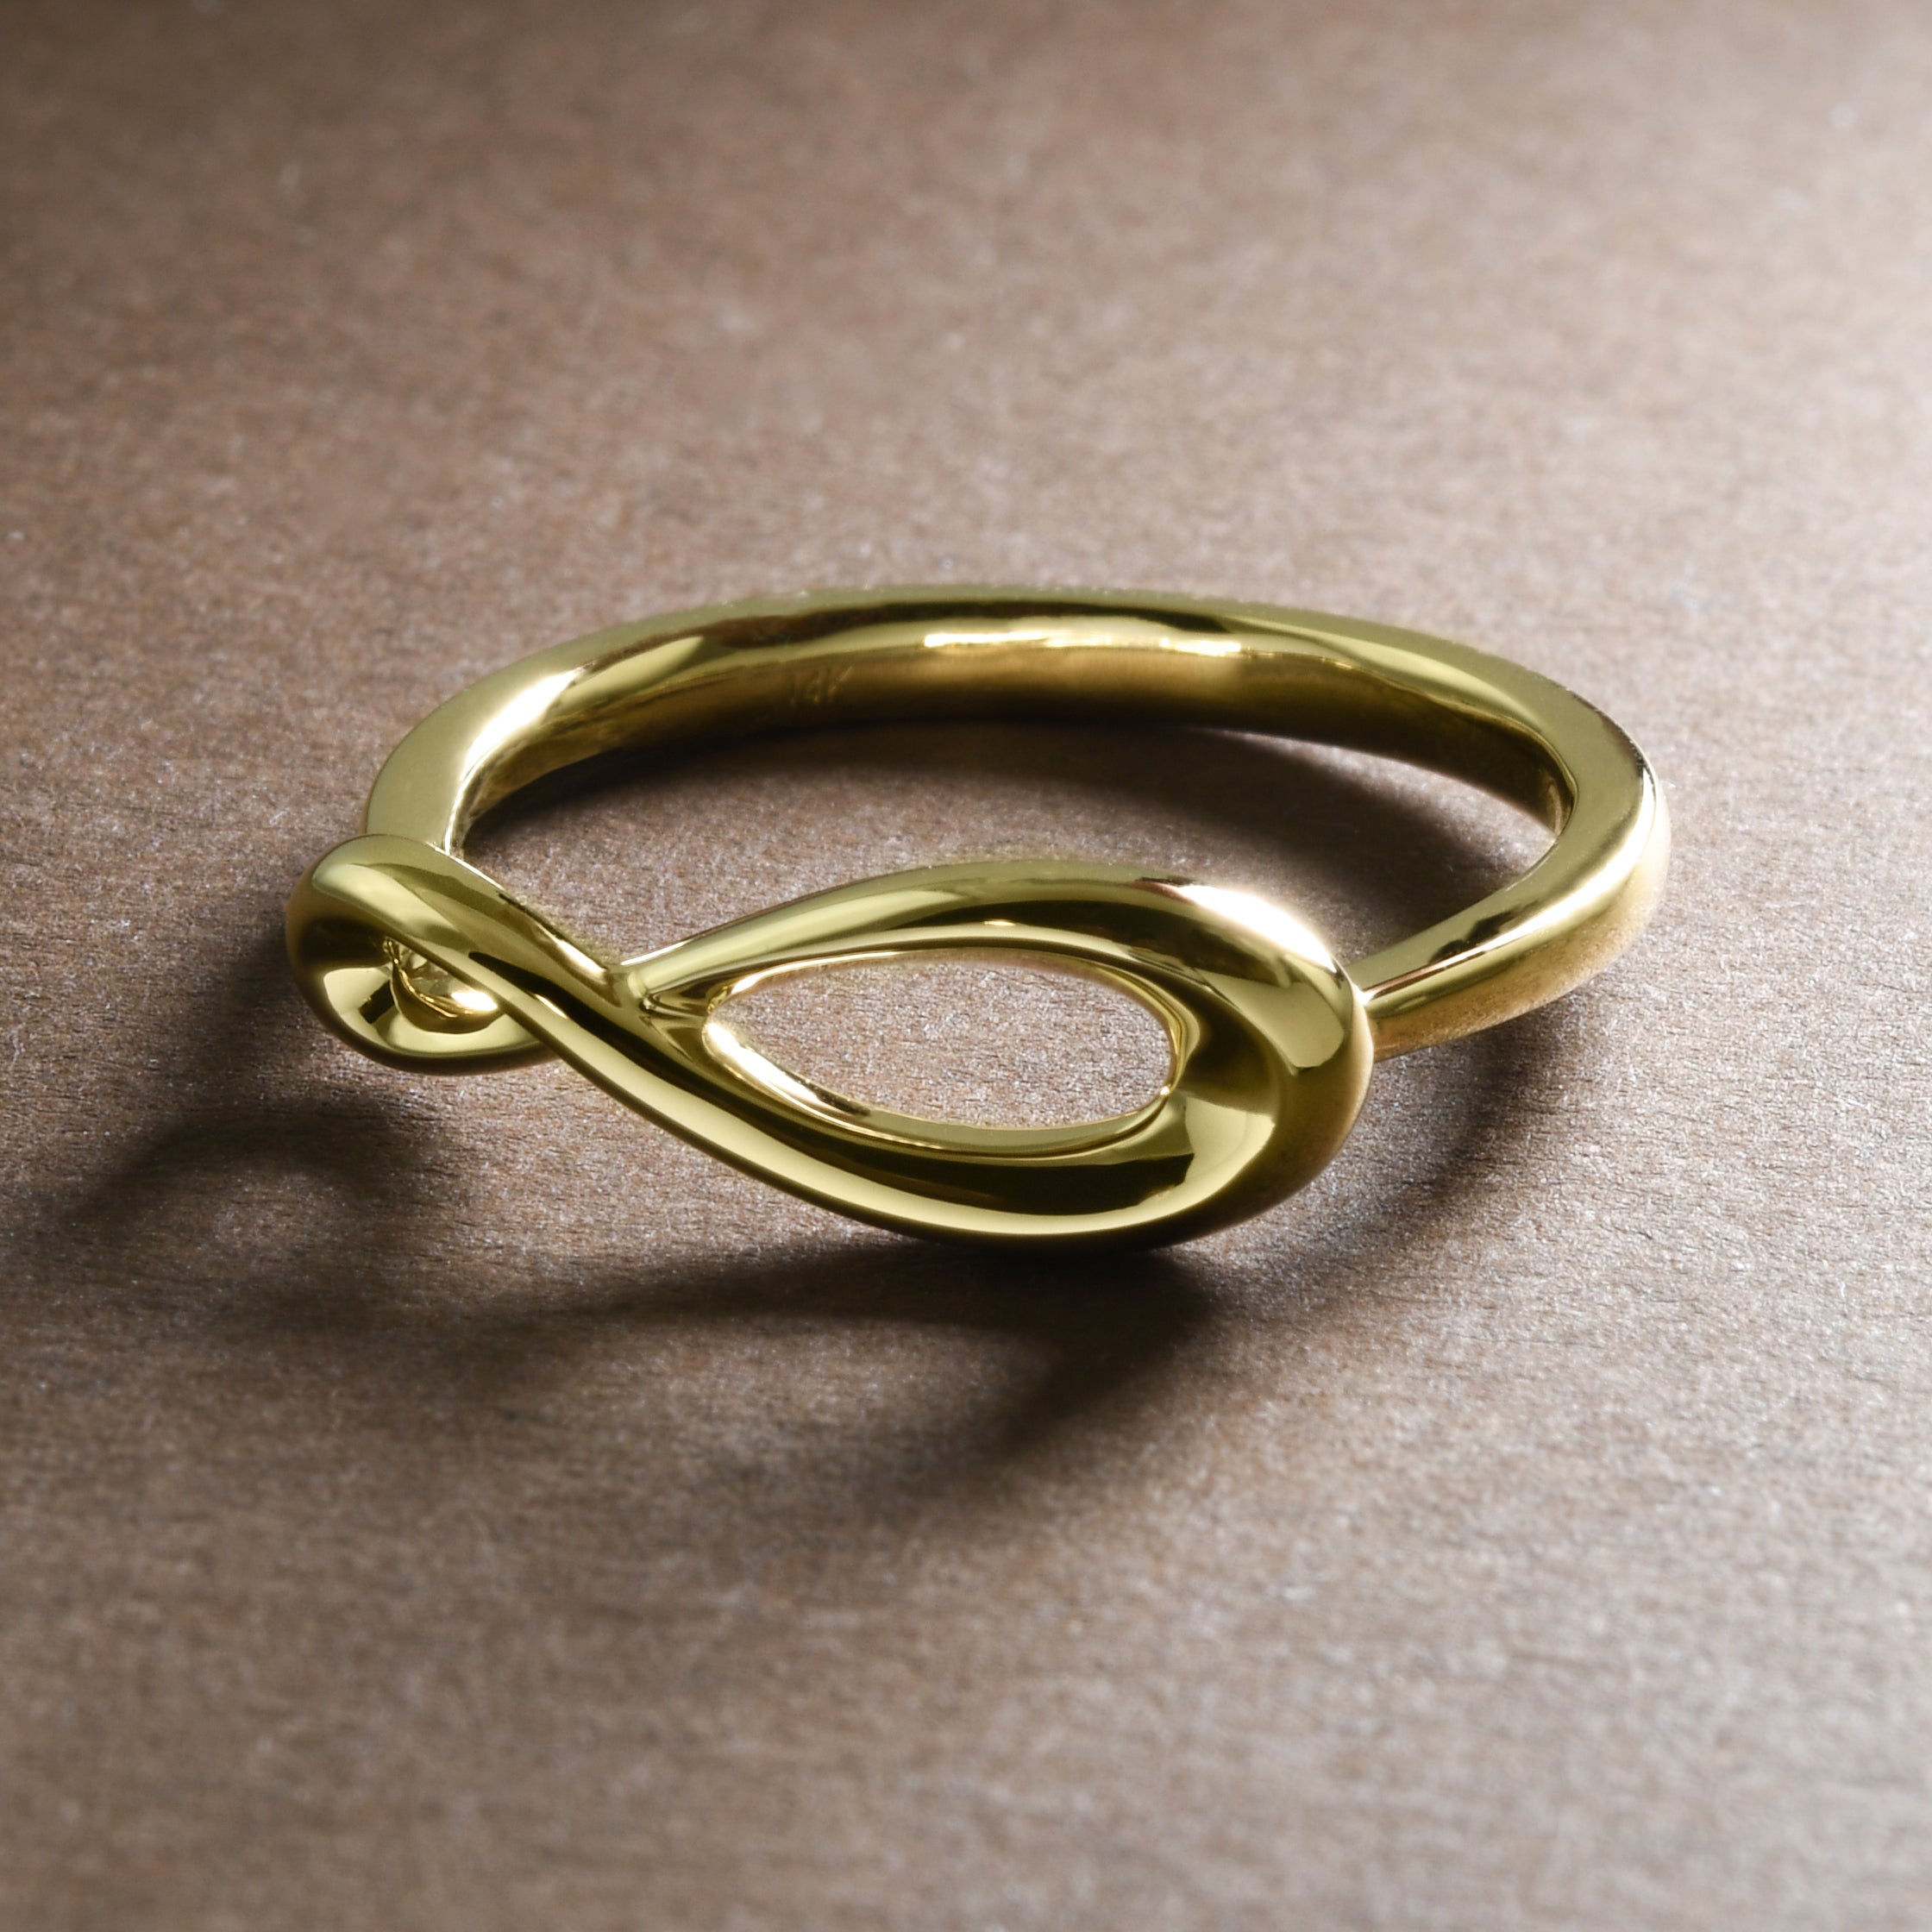 Tiffany & Co 18k Yellow Gold Open Infinity Ring Size 7 in Box Narrow Band  Rare | eBay